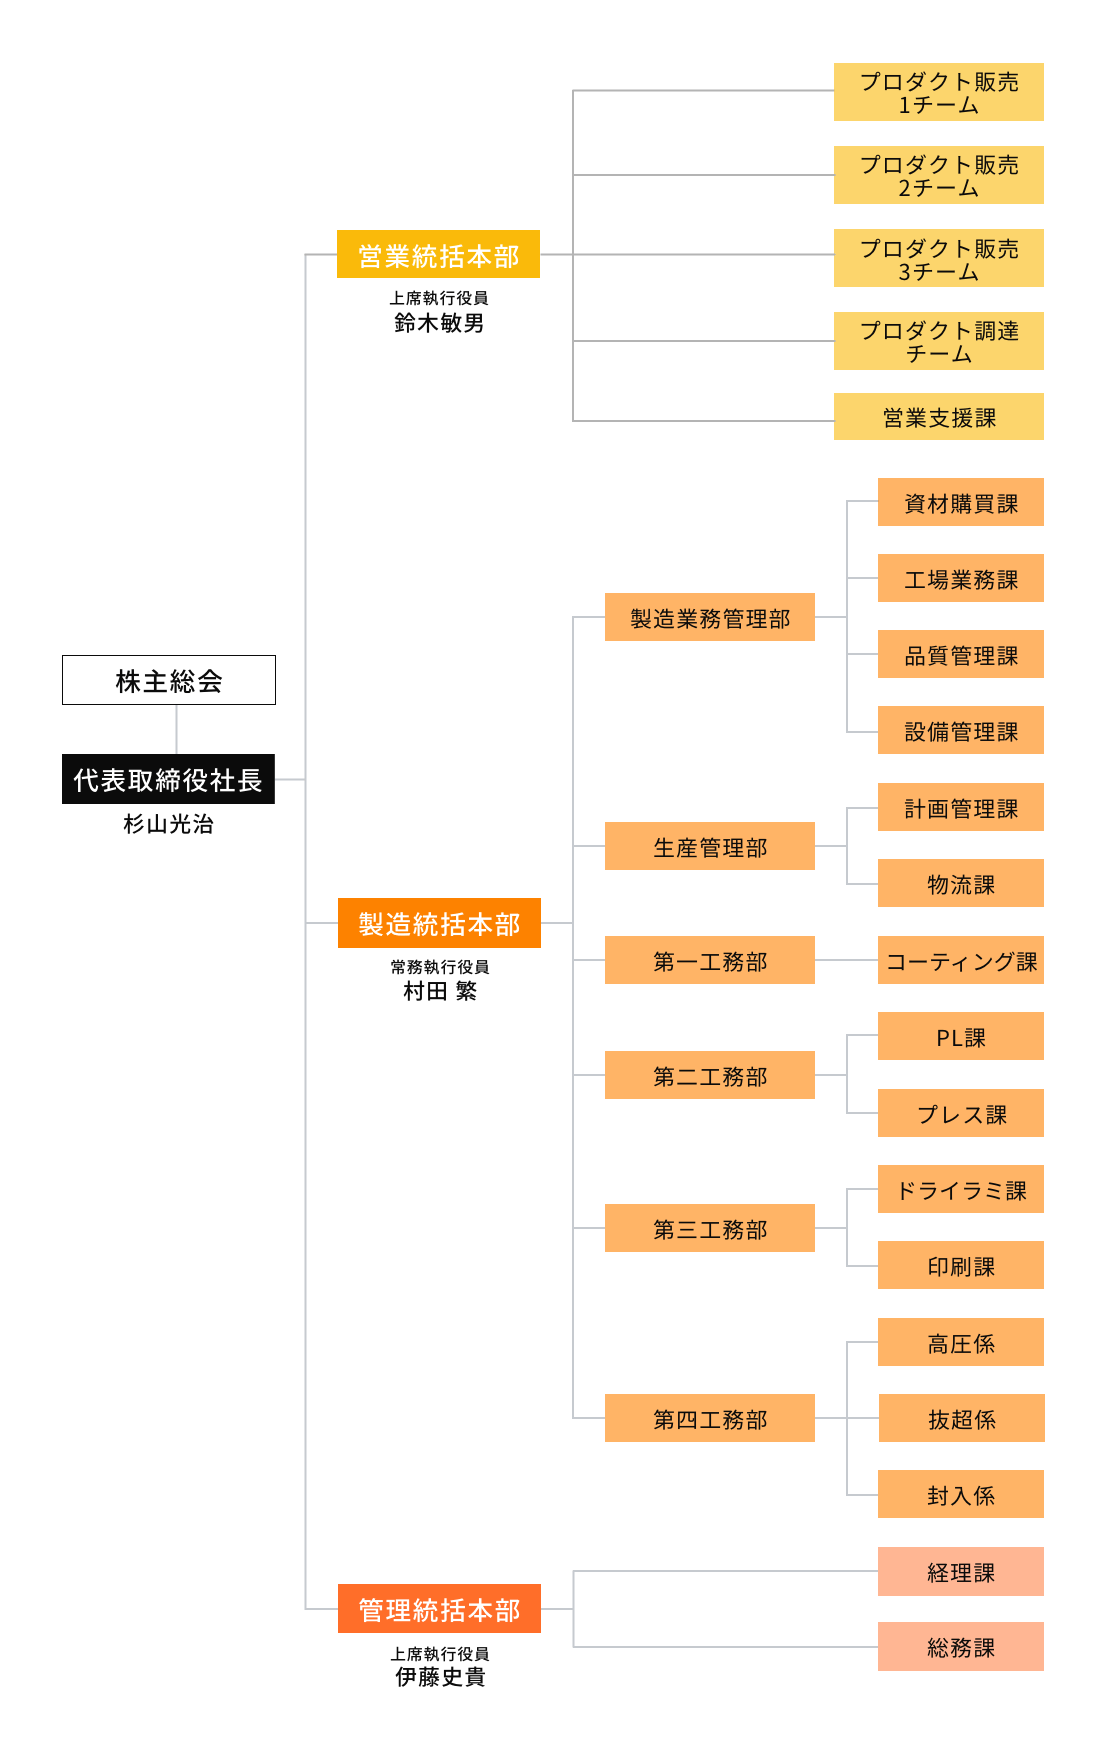 株式会社トーツヤ・エコー組織図